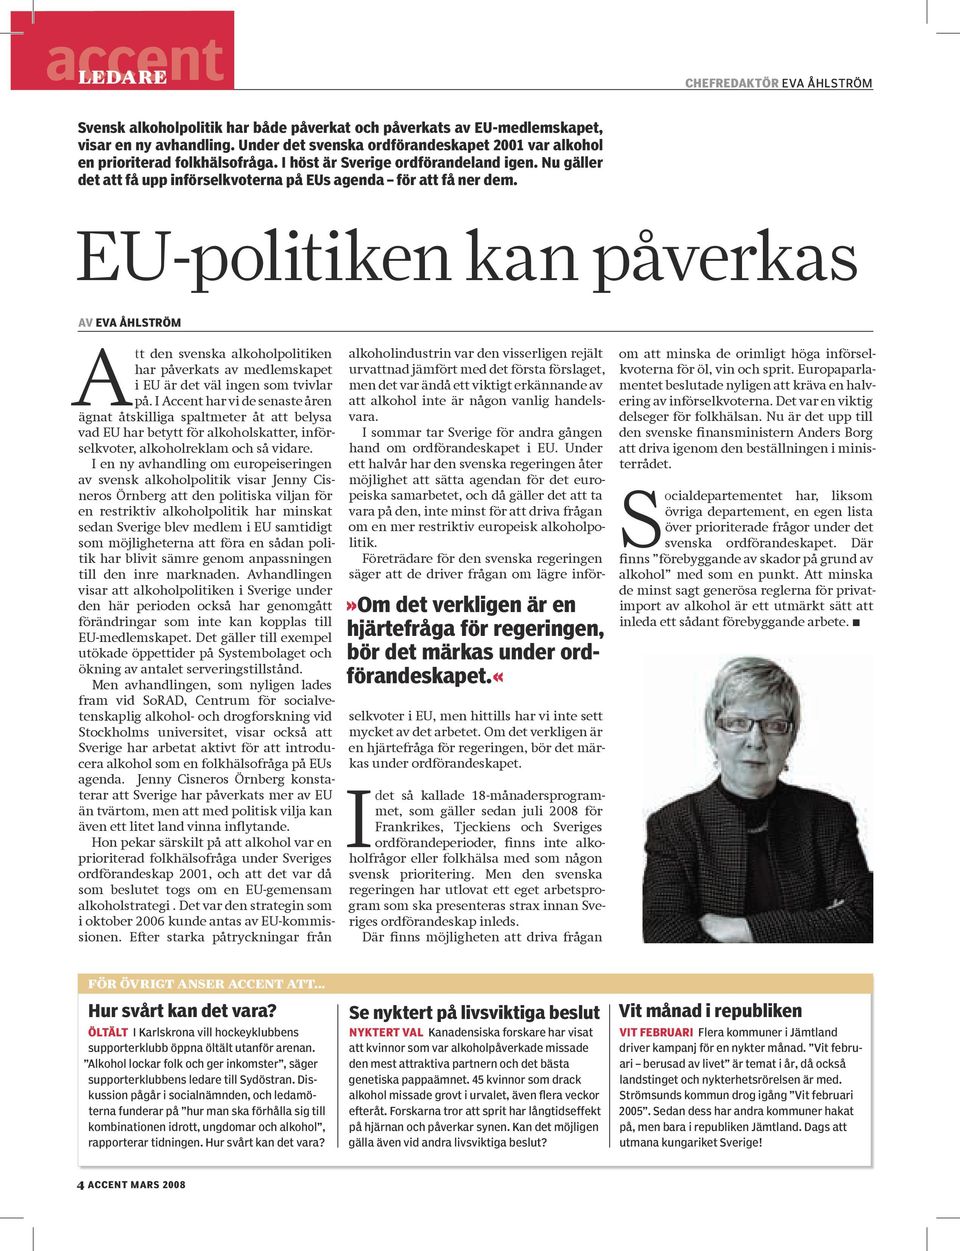 EU-politiken kan påverkas av eva åhlström Att den svenska alkoholpolitiken har påverkats av medlemskapet i EU är det väl ingen som tvivlar på.